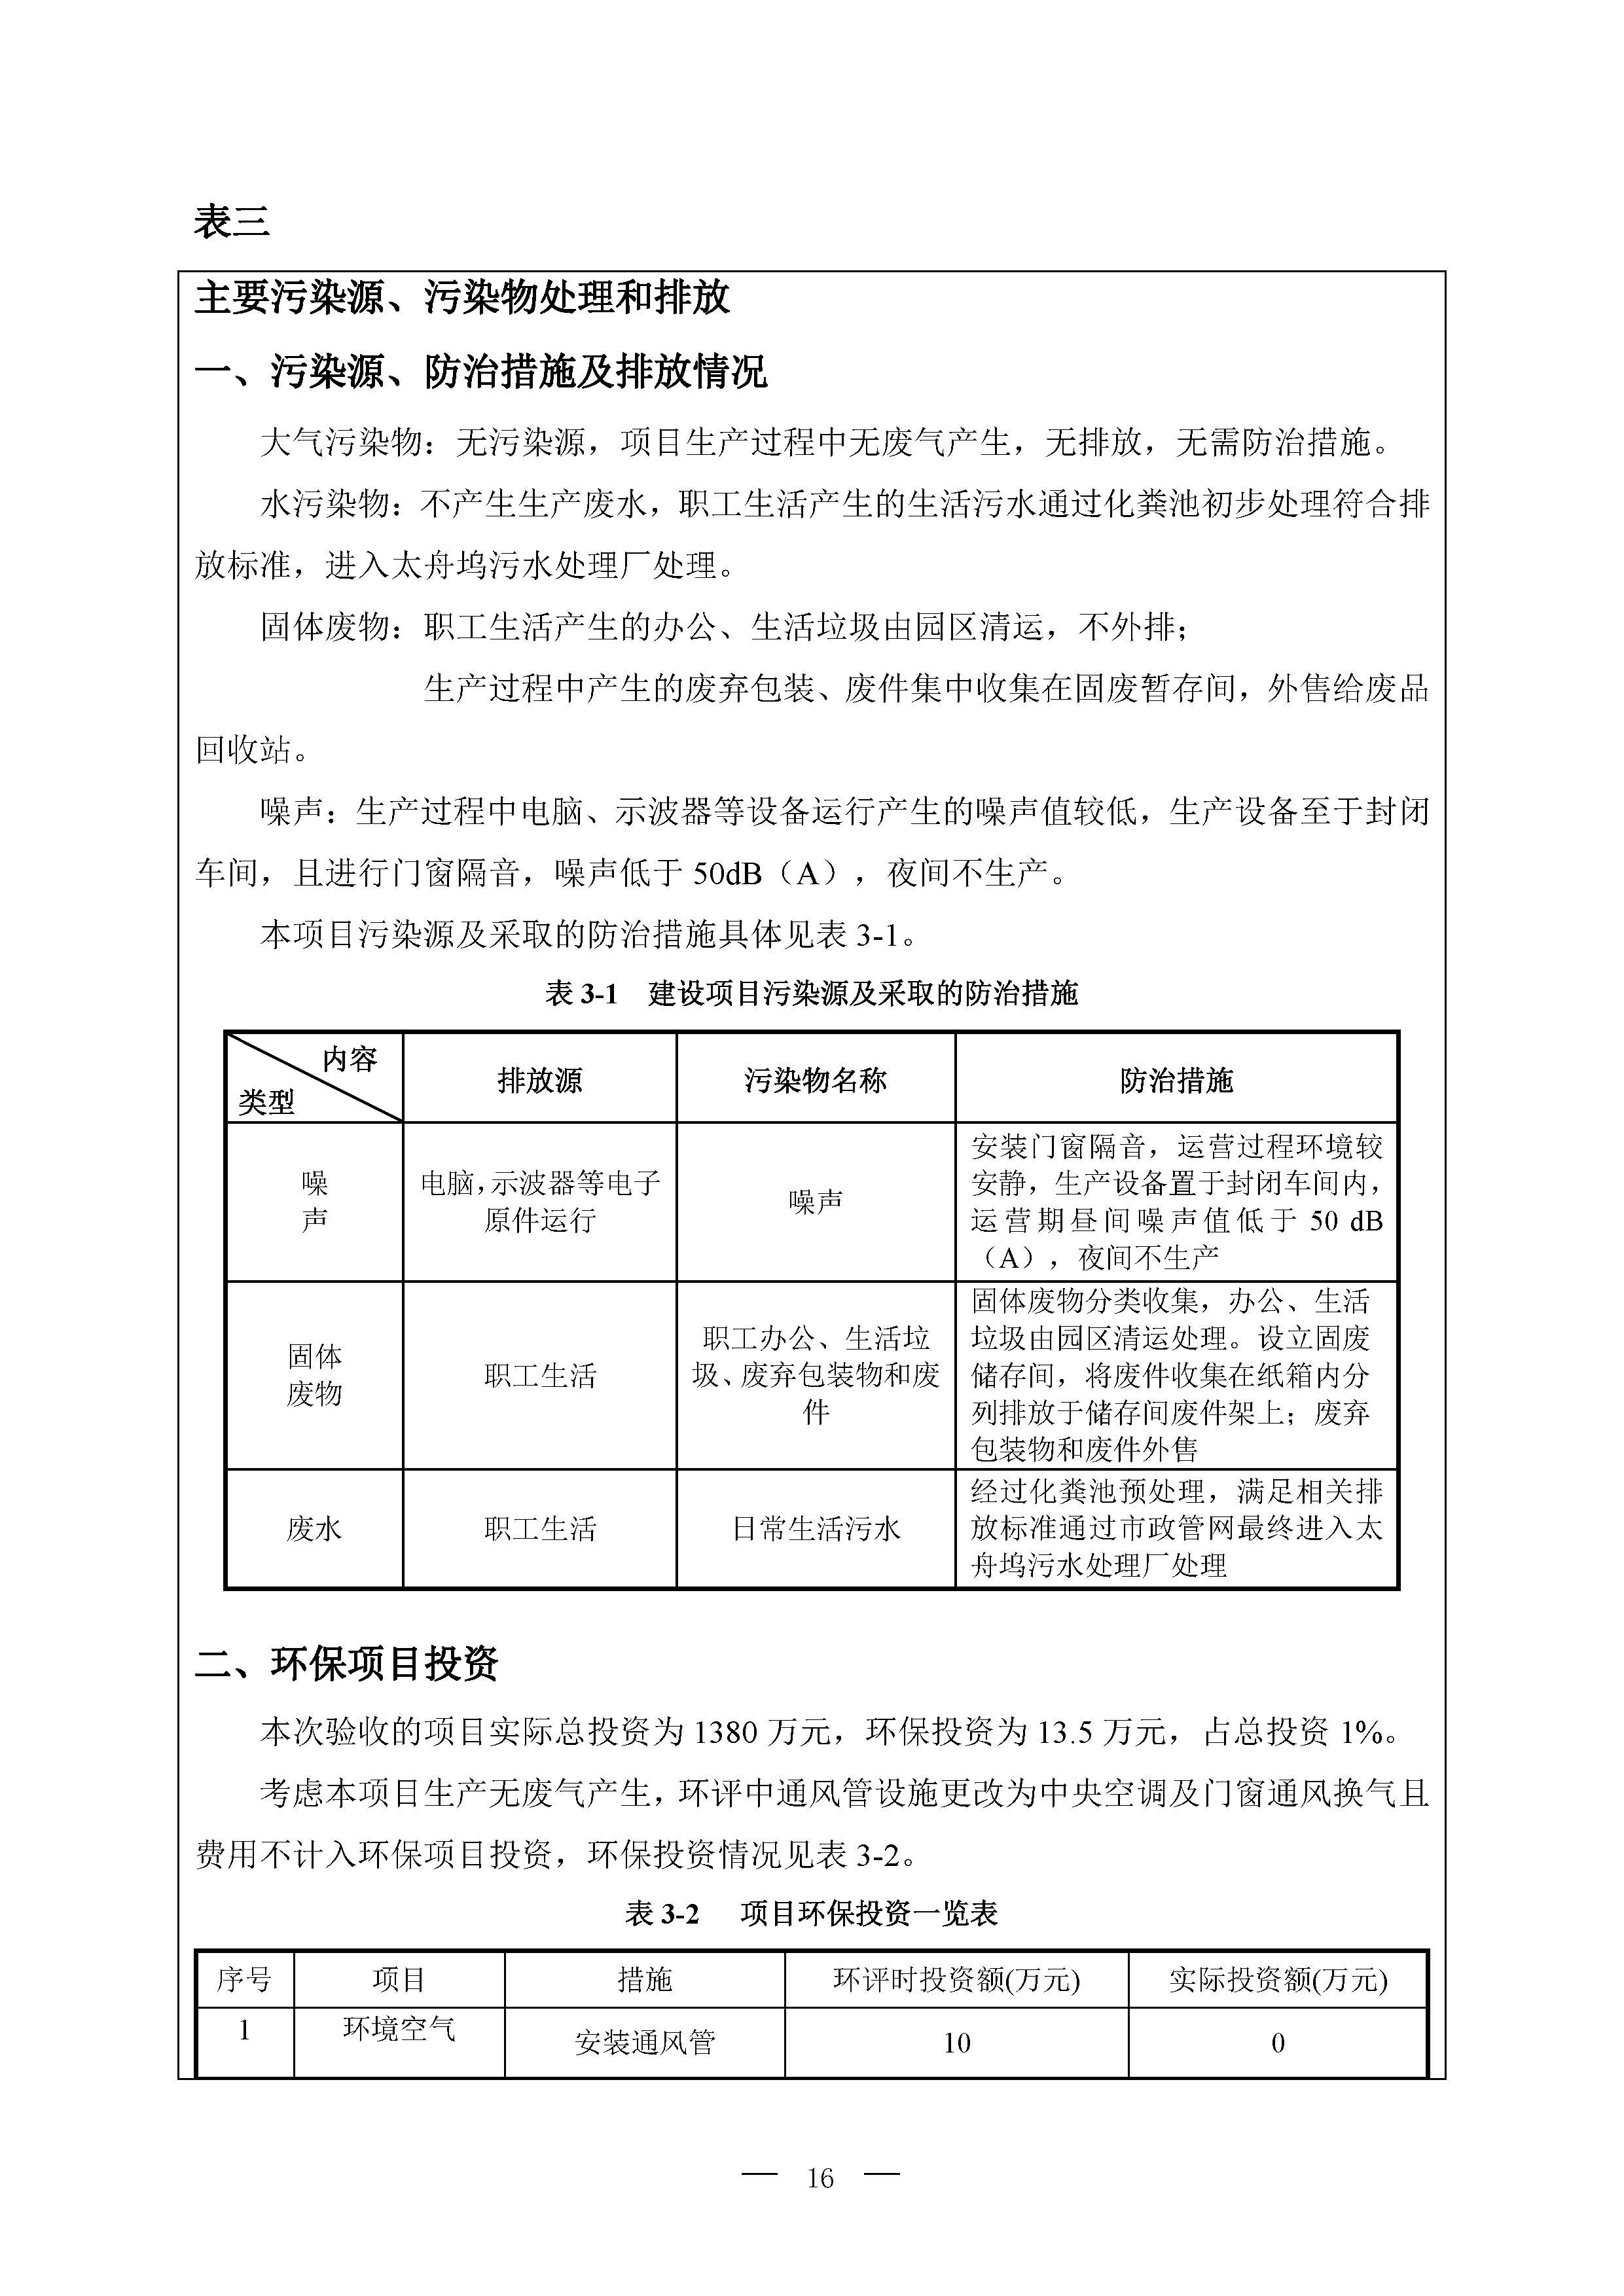 北京博瑞莱智能科技集团有限公司项目竣工环境保护验收监测报告全本公示(图20)